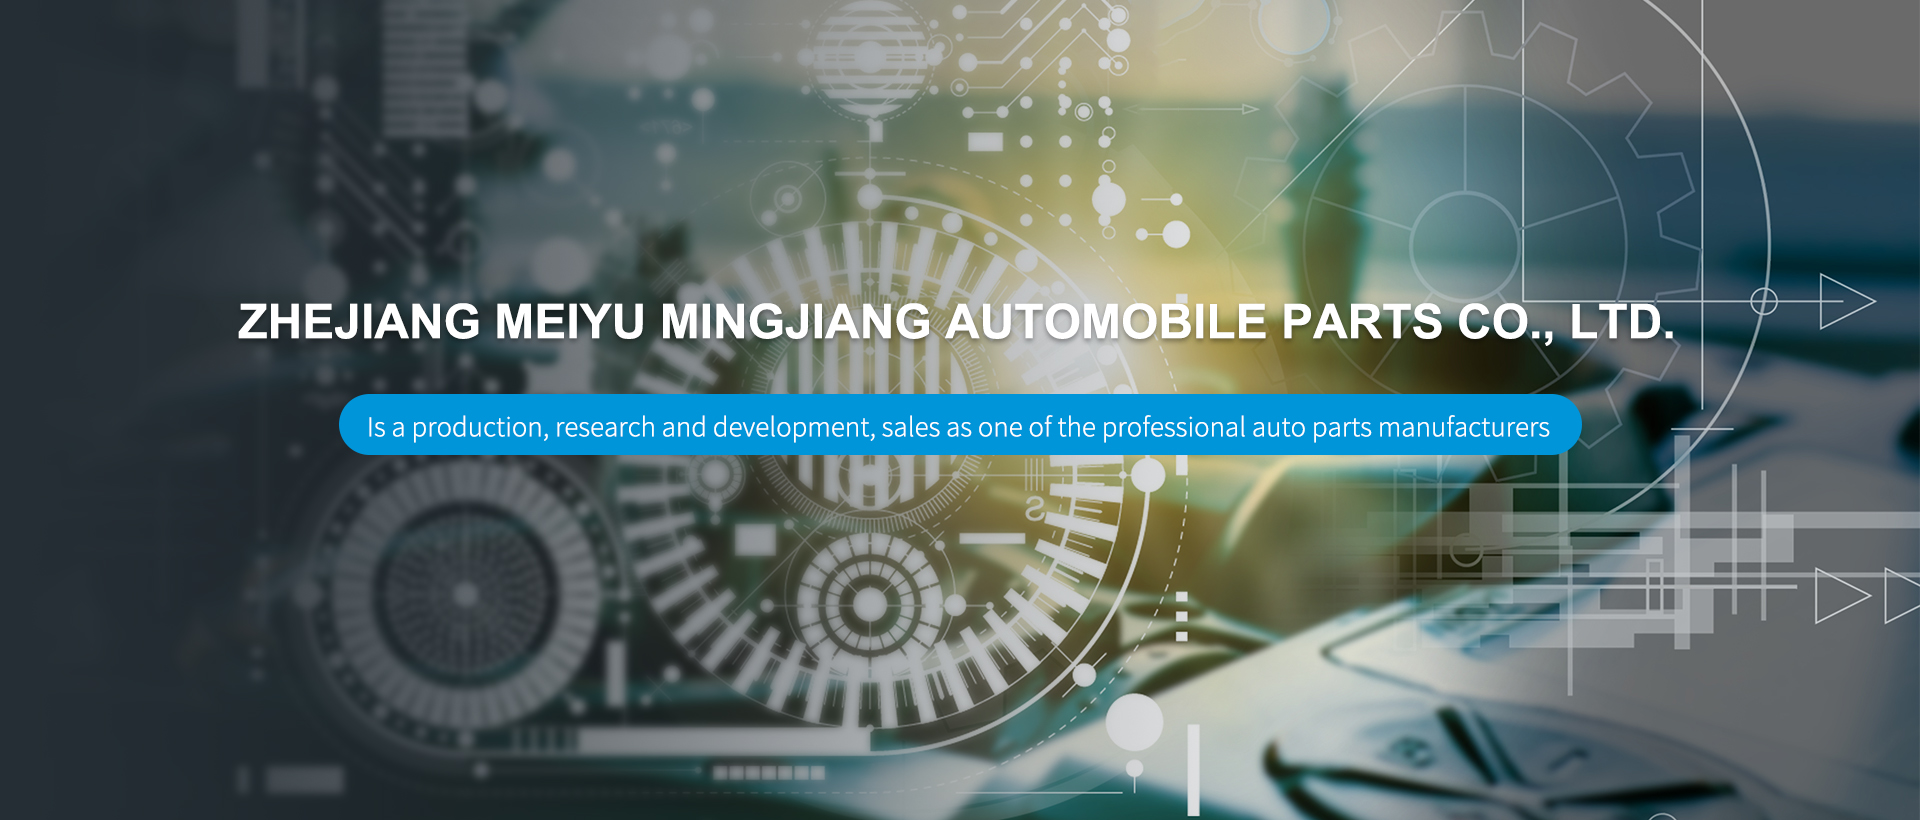 ZheJiang Meiyu Mingjiang Automobile Parts Co.,Ltd